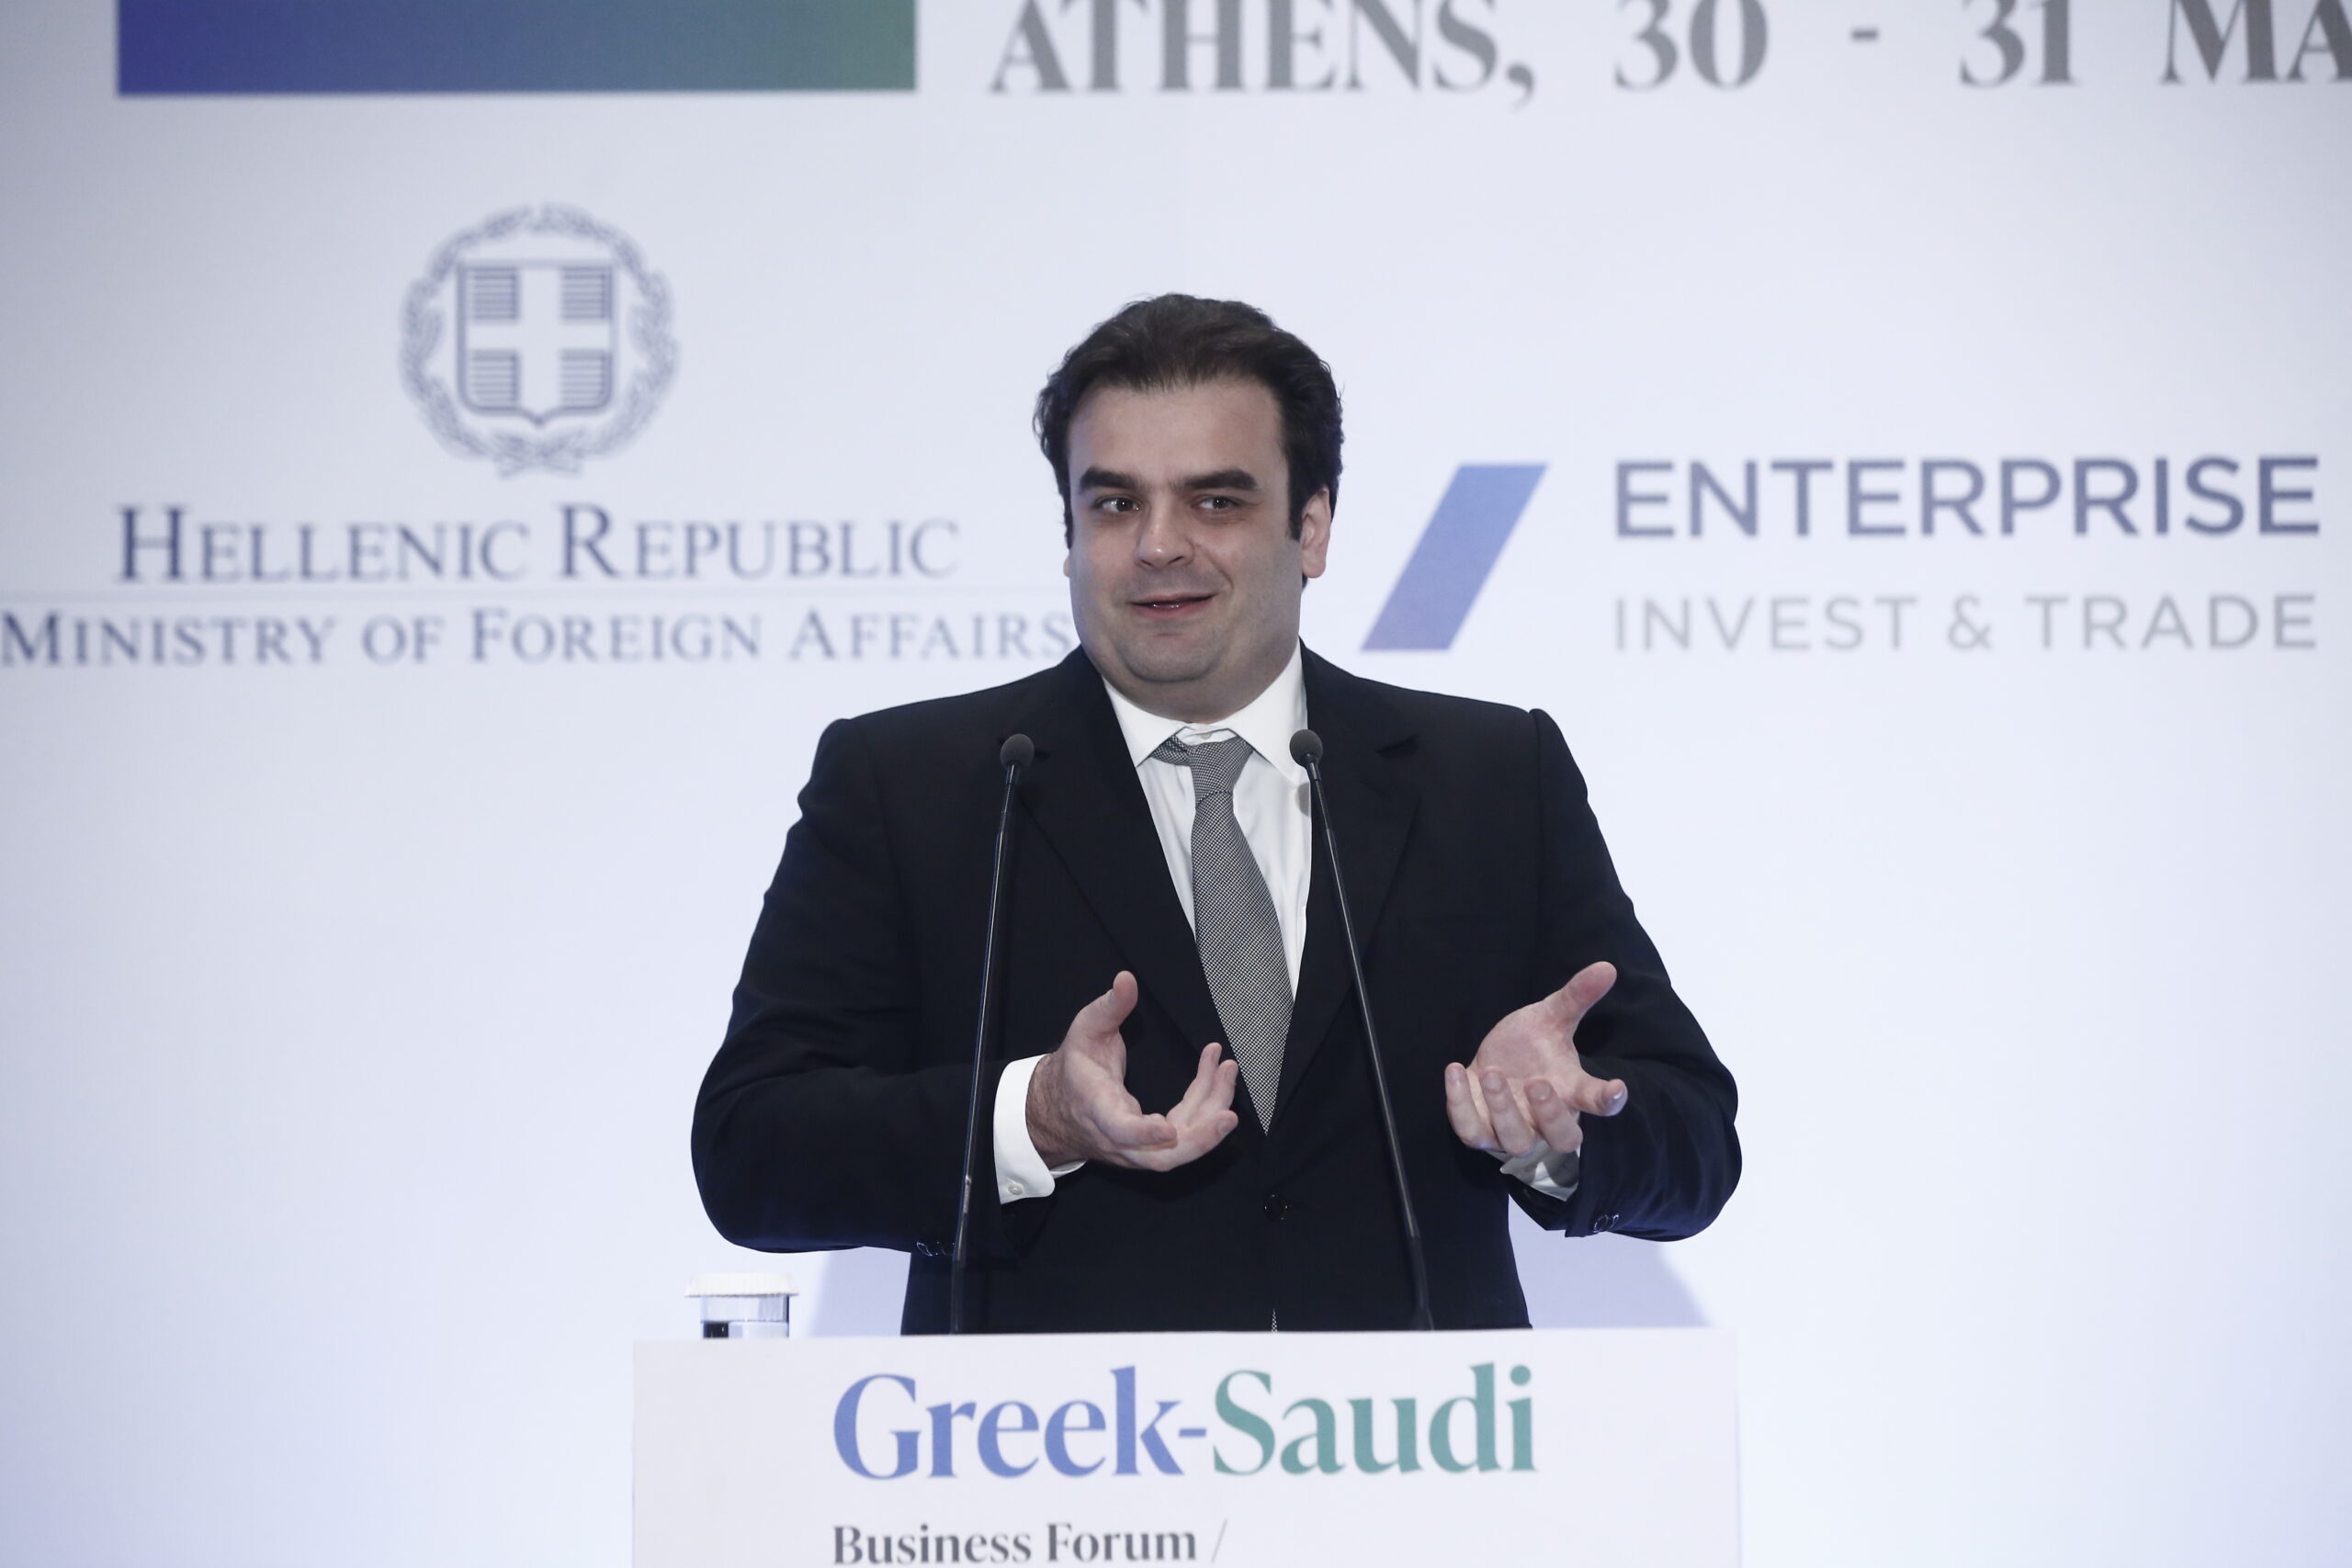 Κ. Πιερρακάκης: «Εργαζόμαστε ώστε να εμβαθύνουμε τις σχέσεις Ελλάδας και Σαουδικής Αραβίας»